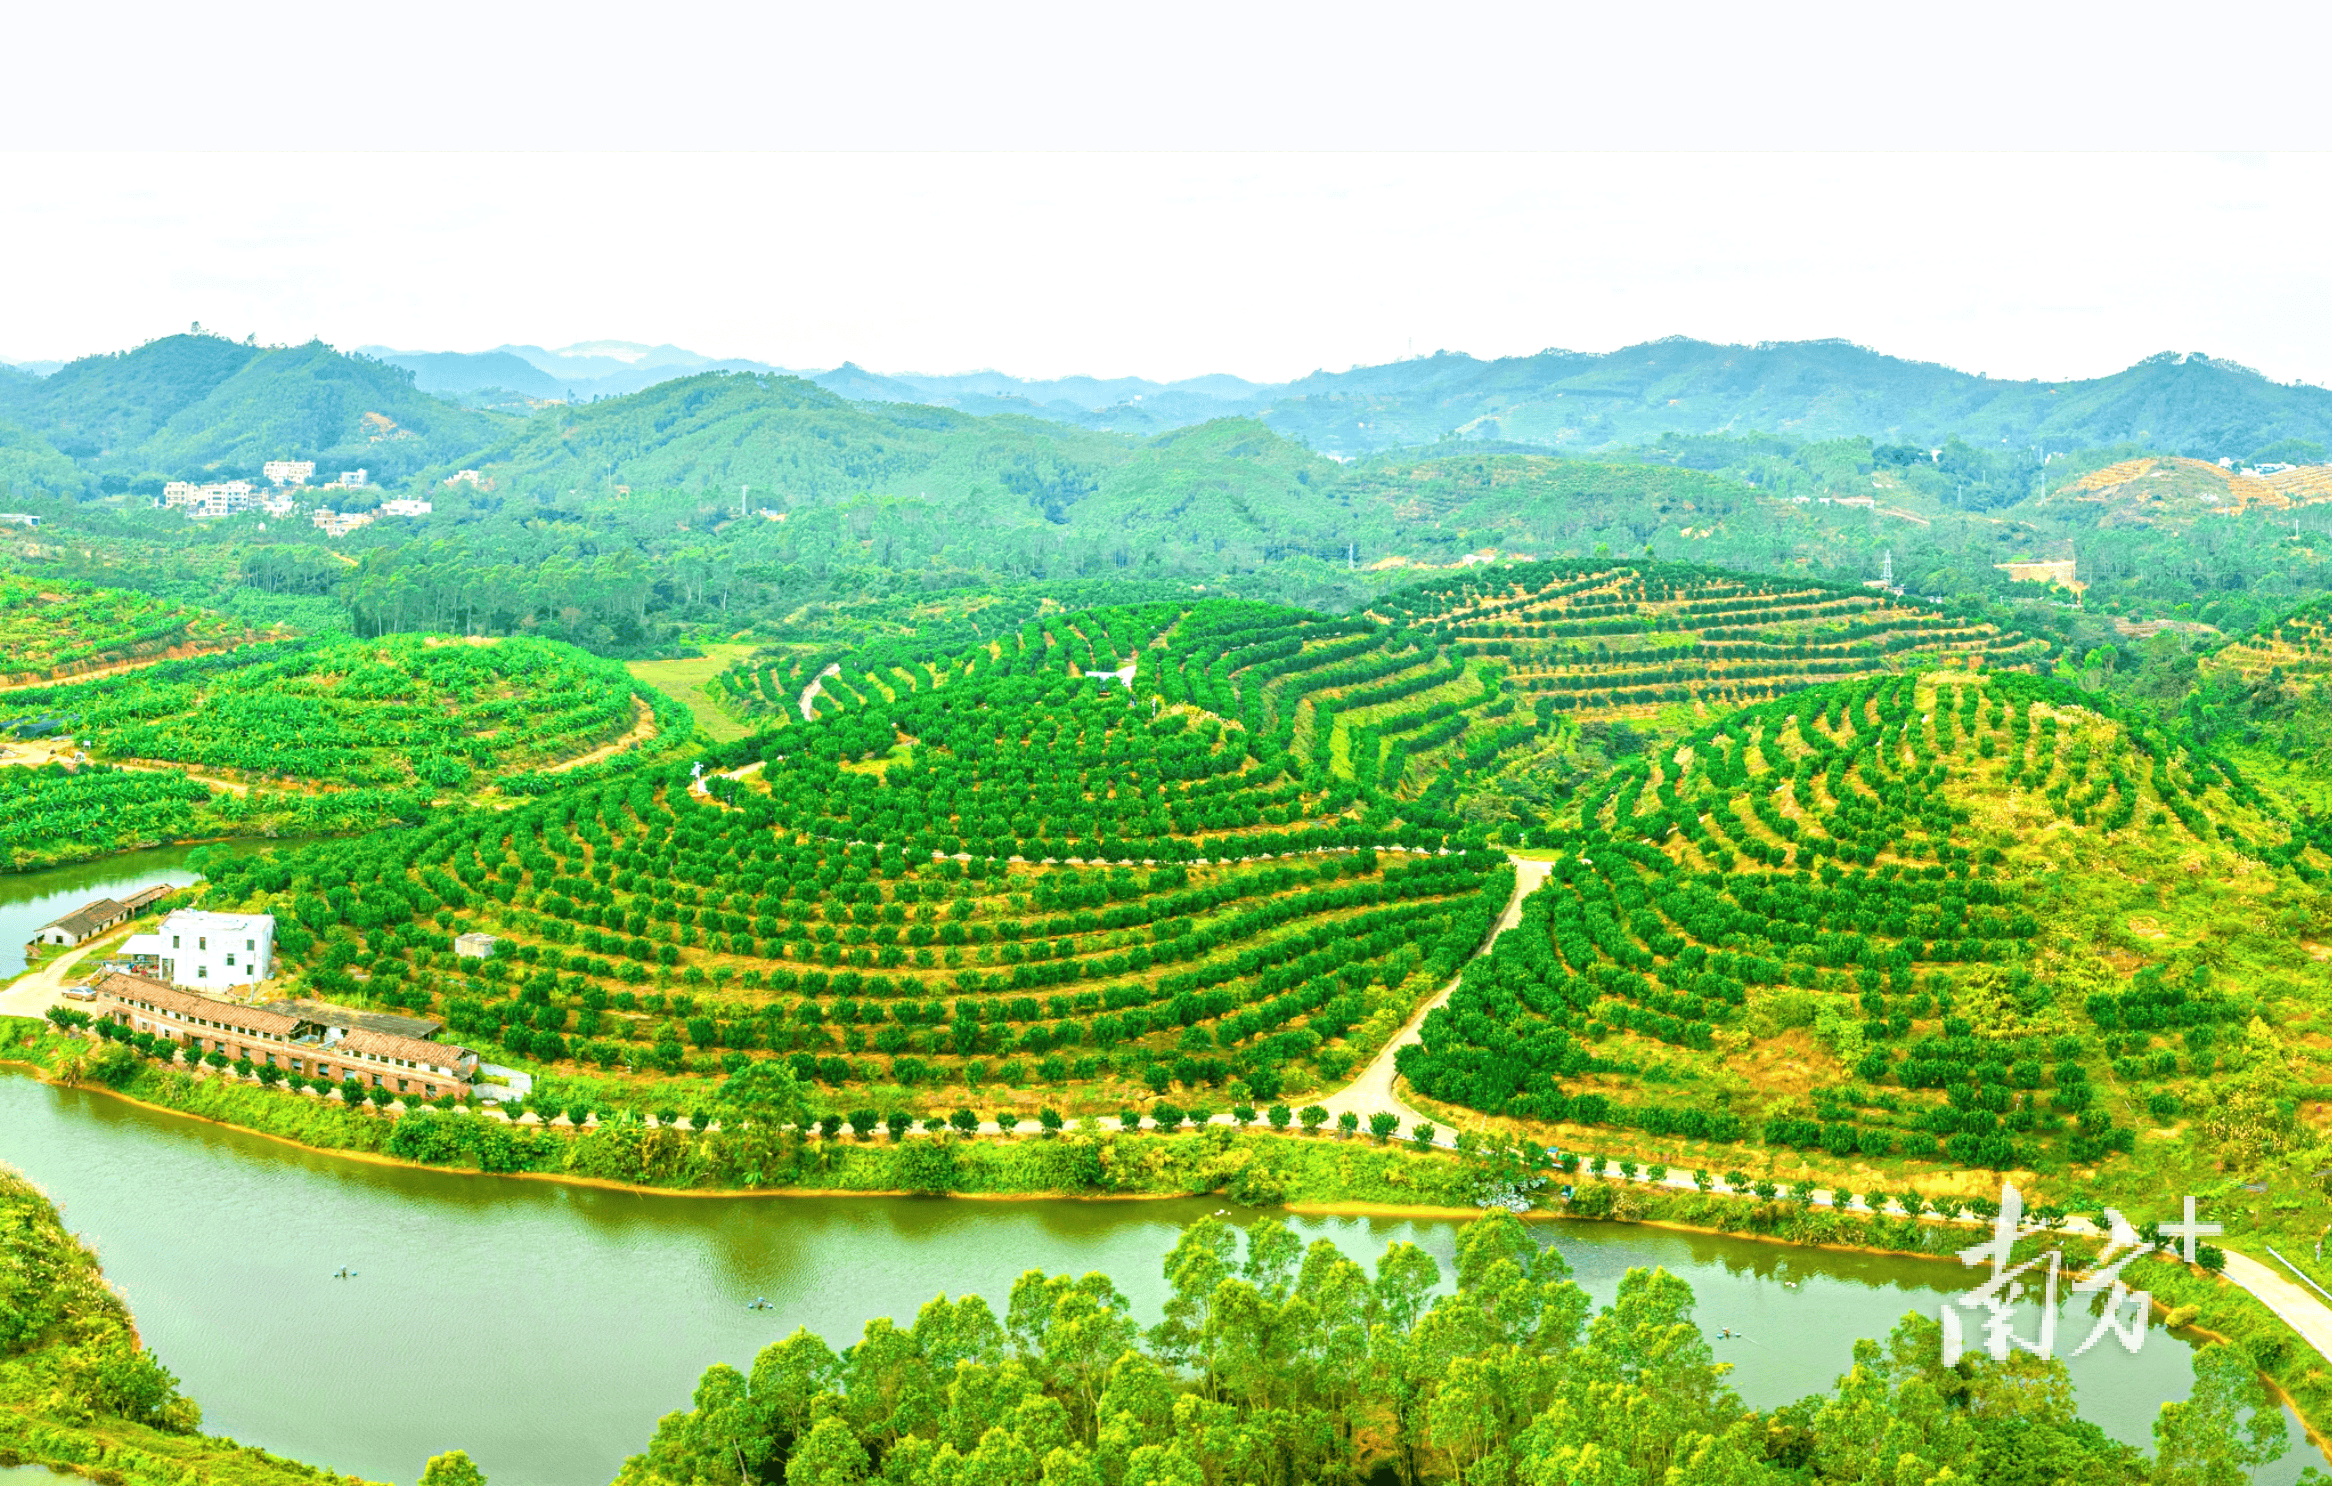 橡胶 南药特色种植面积超8万亩,广东农垦探索多种复合种植模式